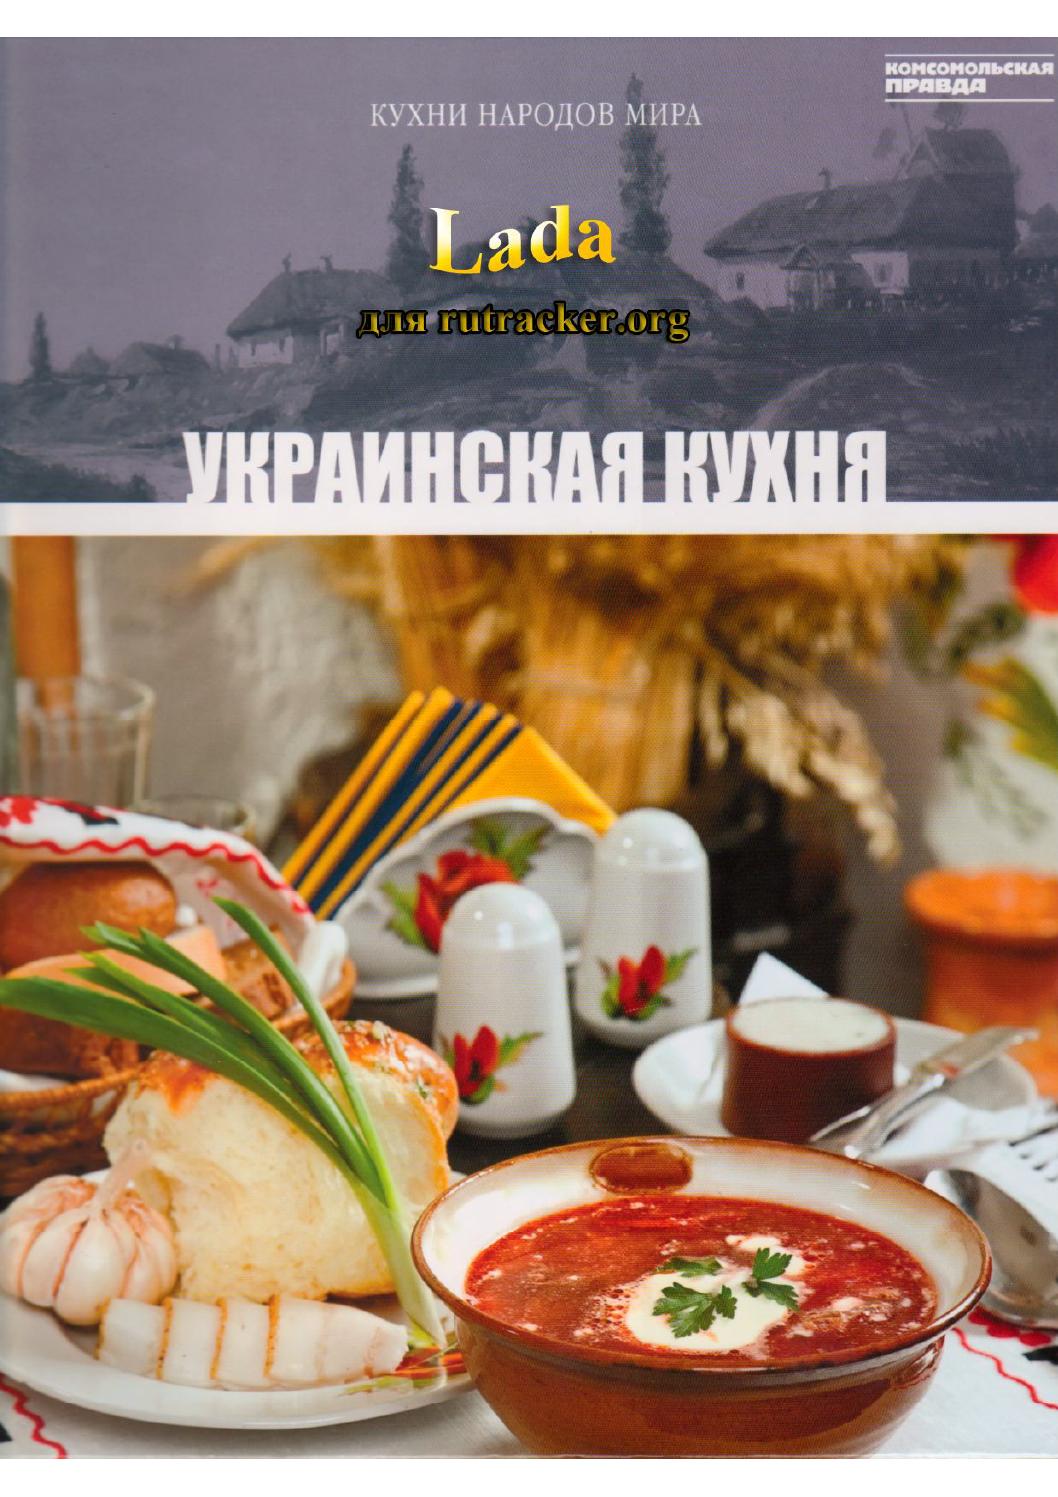 Кухни народов мира. Том 7. Украинская кухня